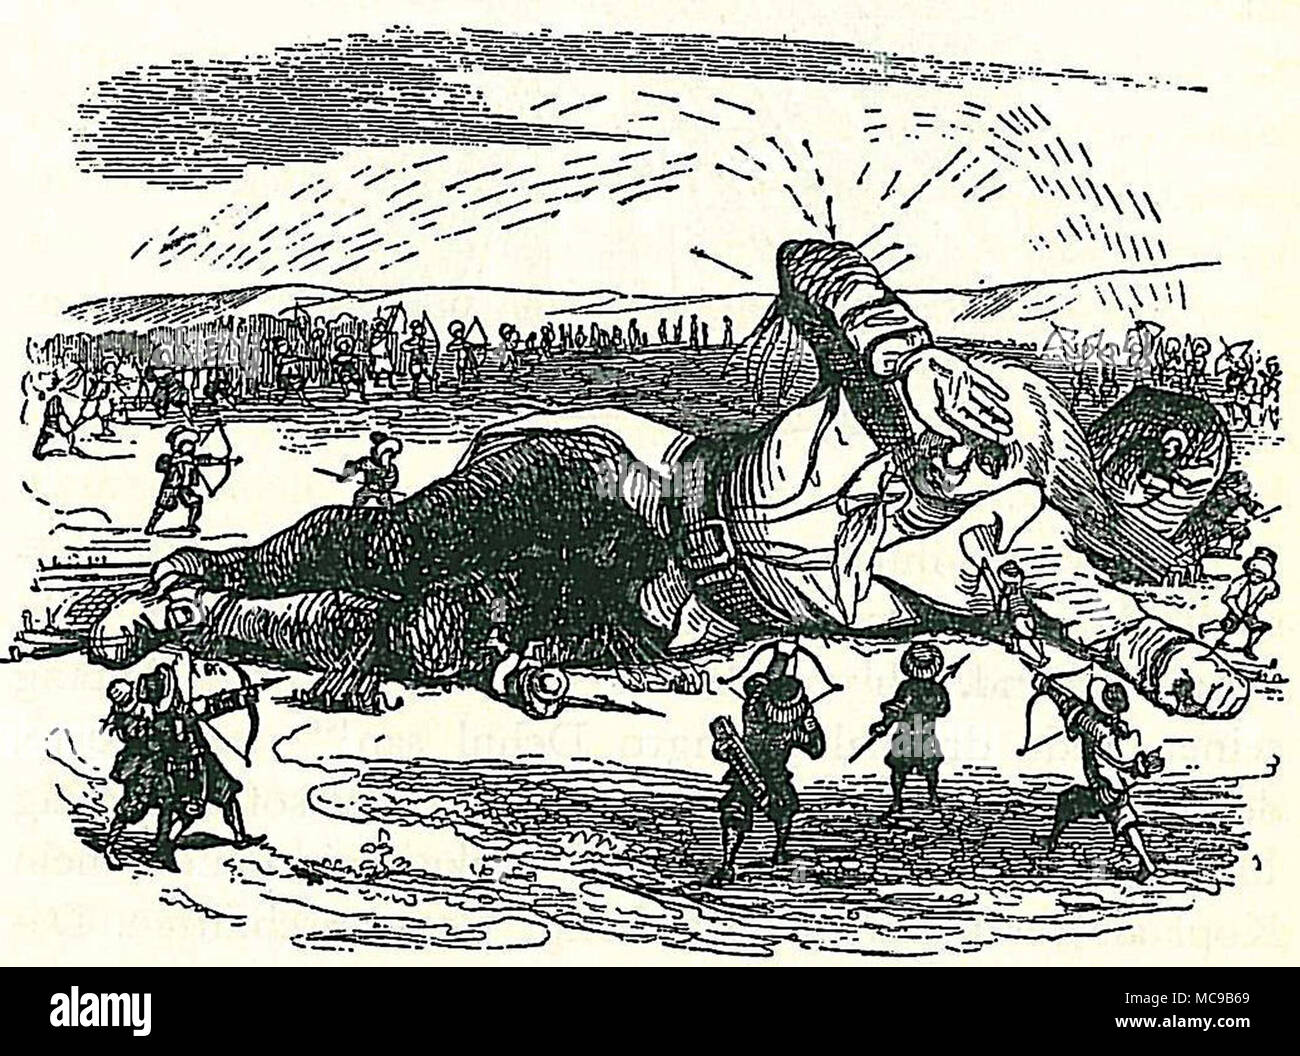 Gulliver capturados por los liliputienses, ilustración de la novela de Jonathan Swift los viajes de Gulliver por Grandville Foto de stock